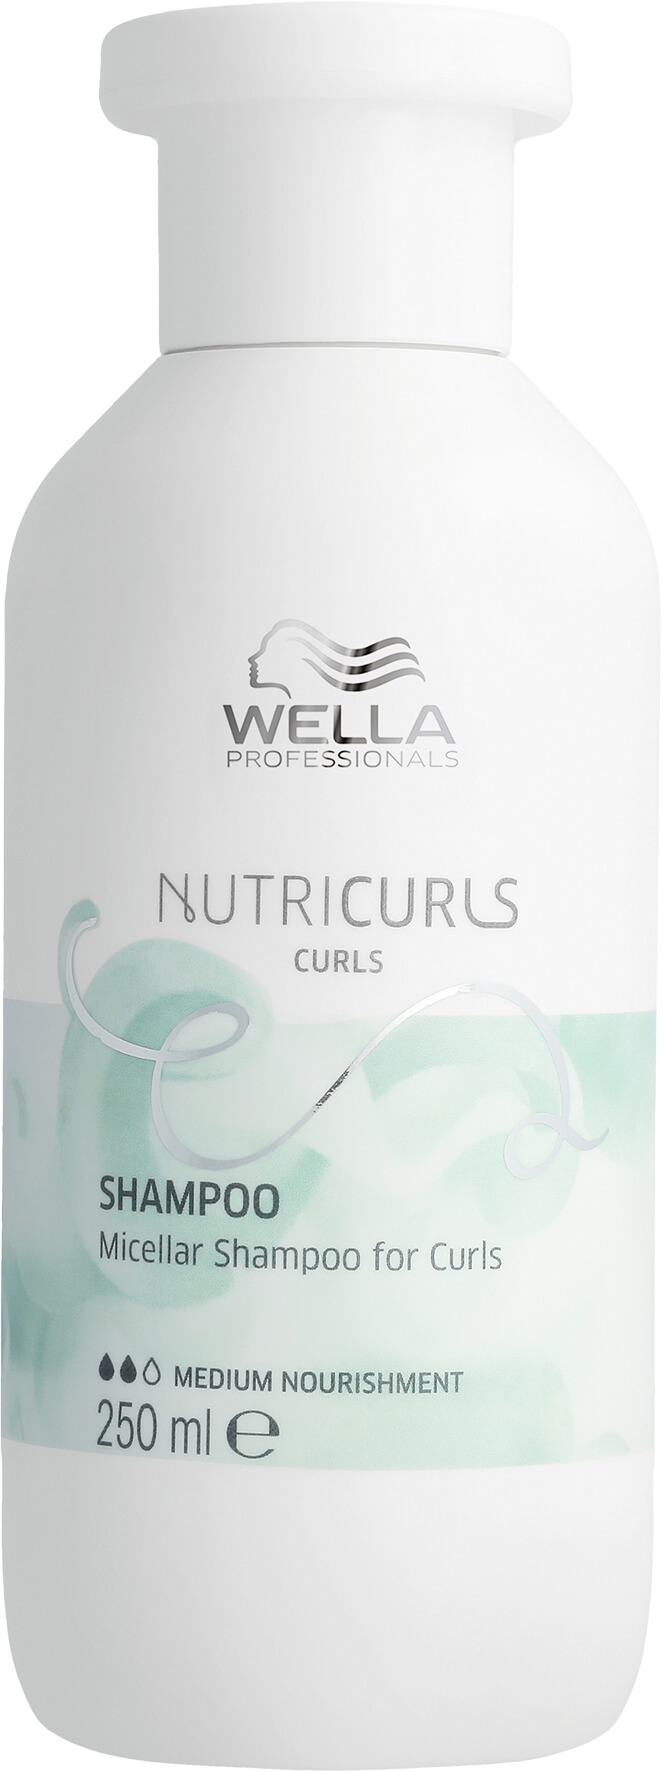 Wella NutriCurls Shampoo für lockiges Haar 